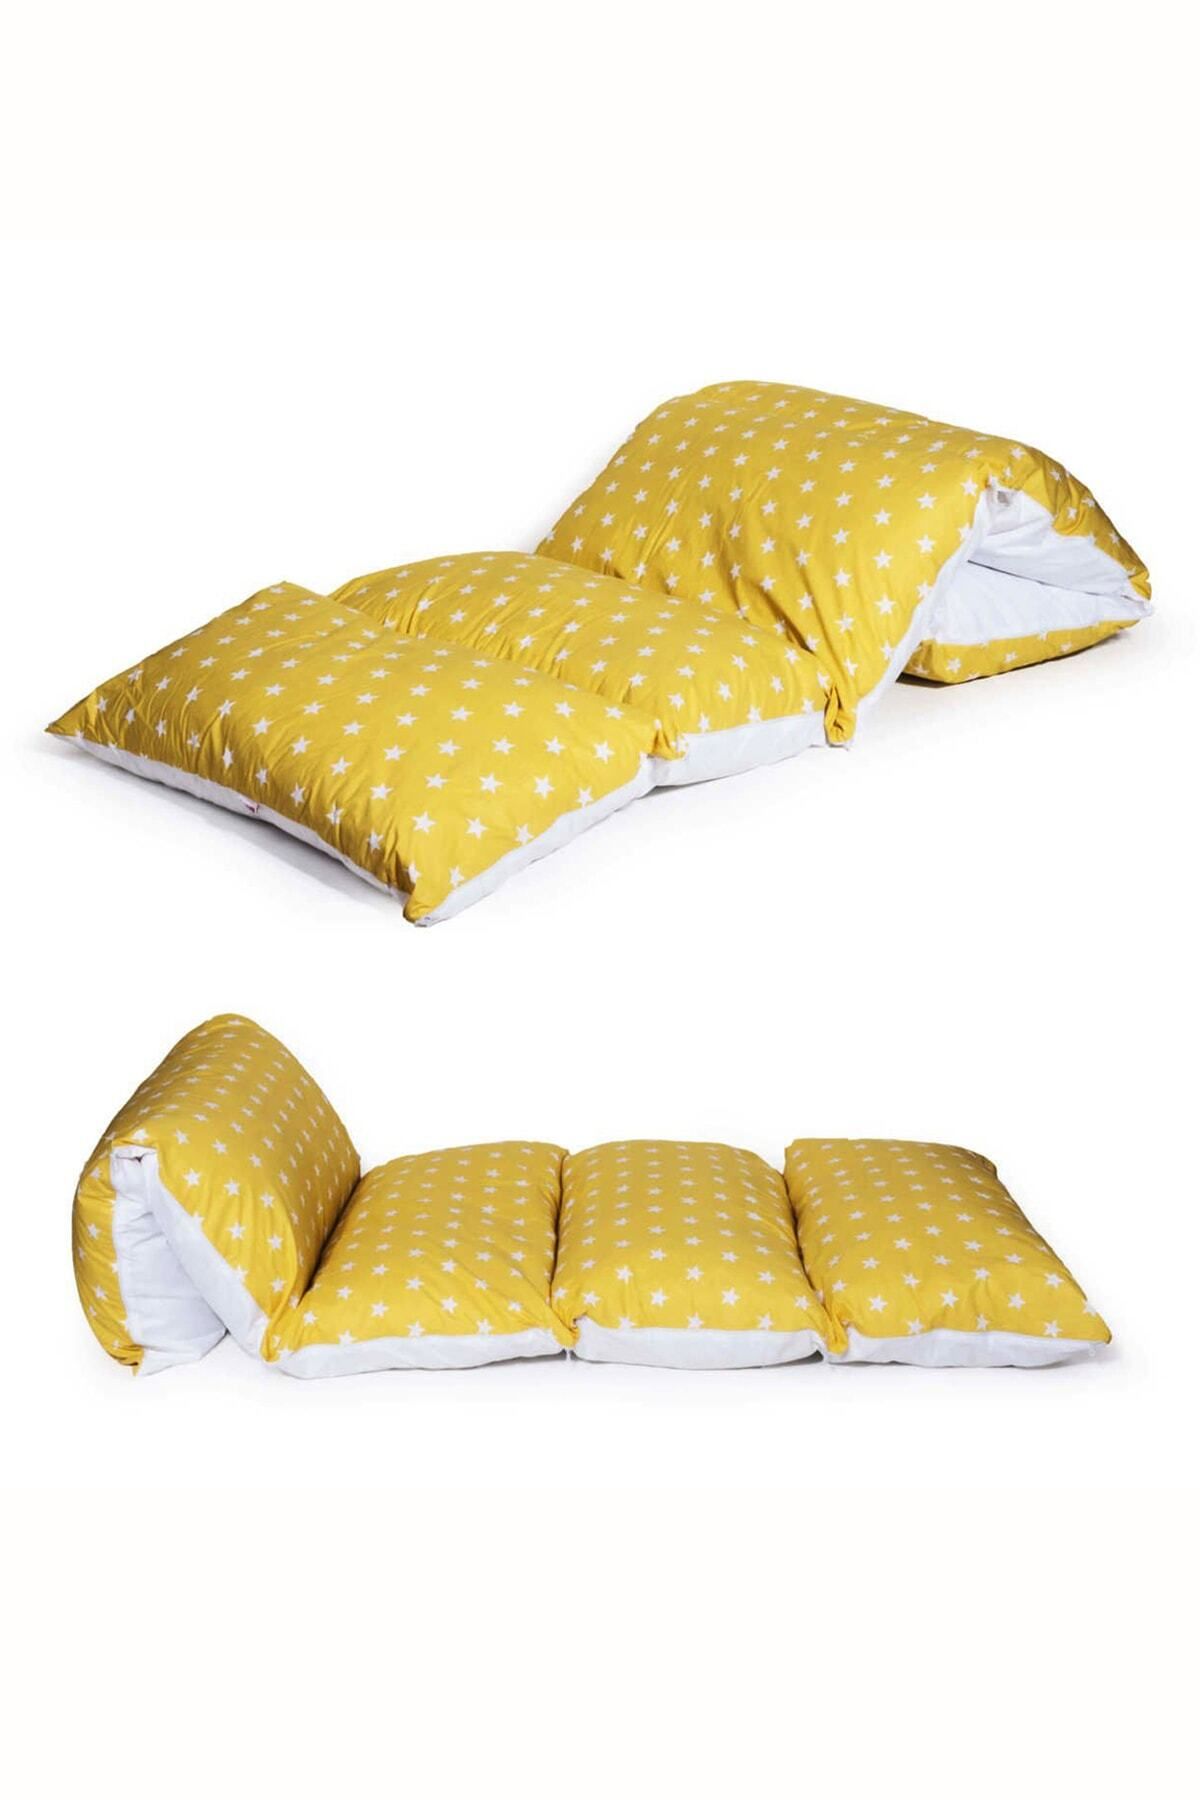 Bundera Puf Sarı Yıldızlı Çocuk Katlanır Yer Minderi Bebek Yer Yatağı 5 Bölmeli Yastık Oyun Halısı